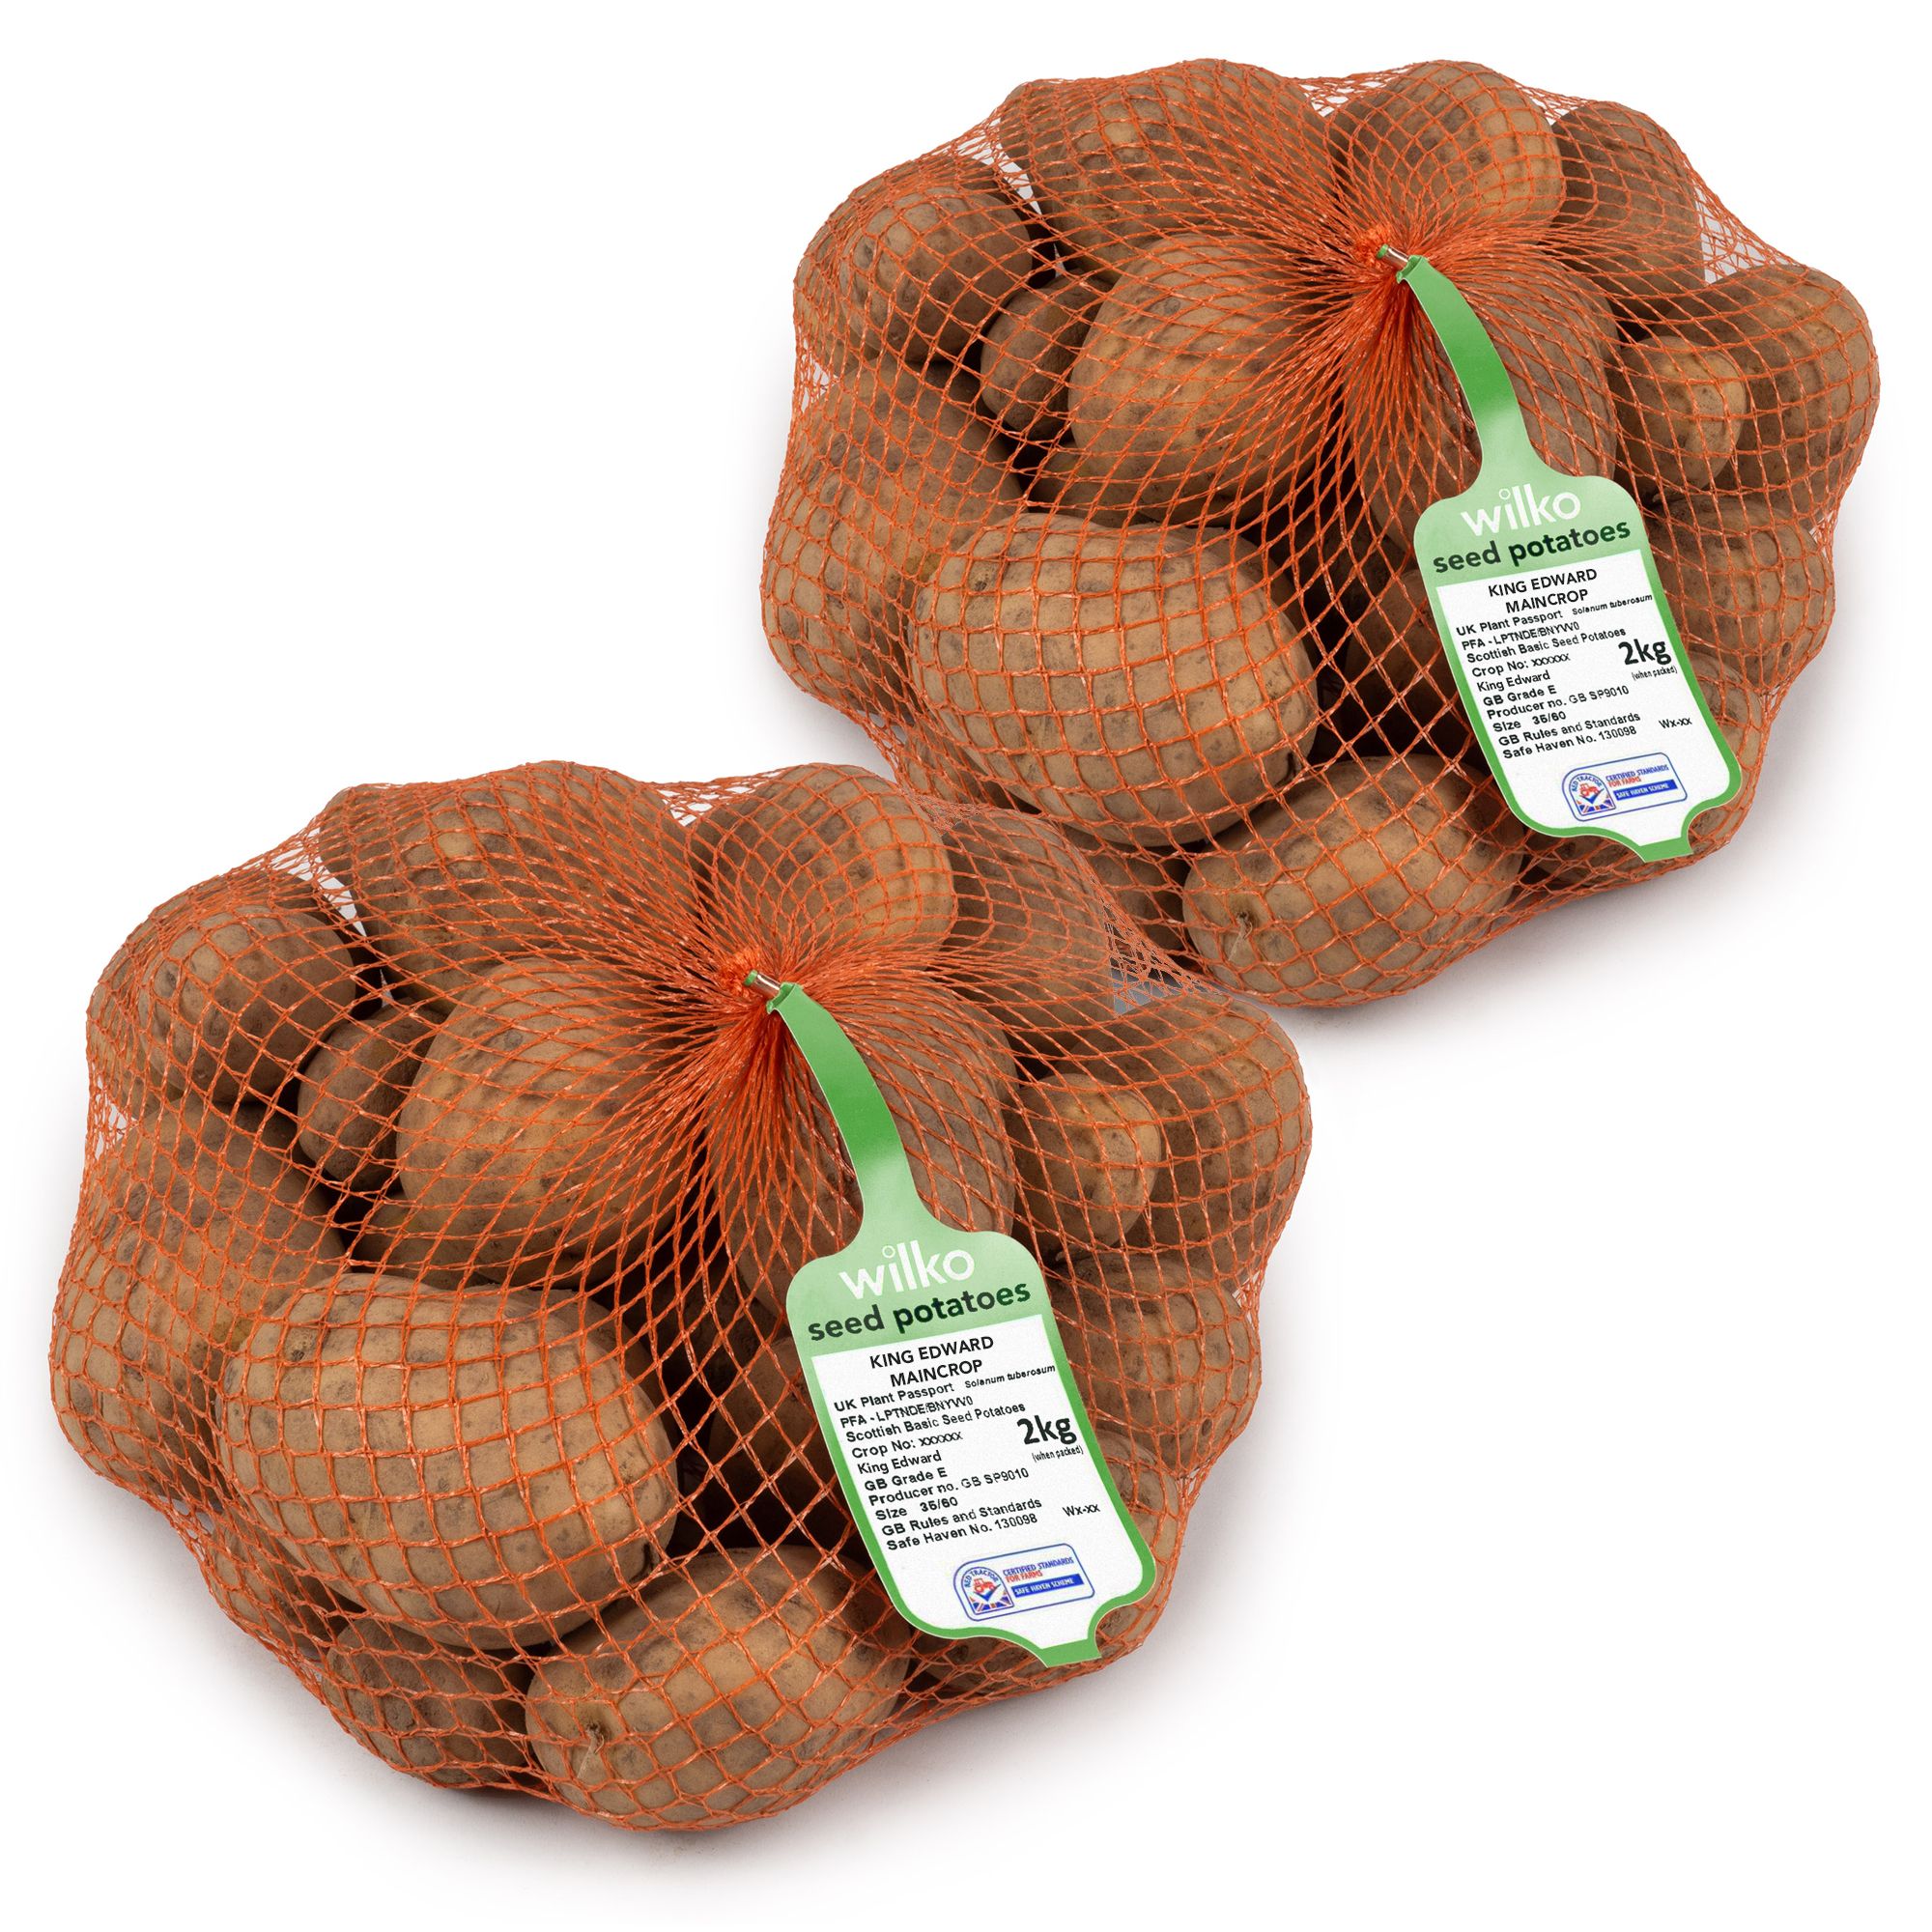 Wilko King Edward Maincrop Seed Potatoes 4kg Image 2